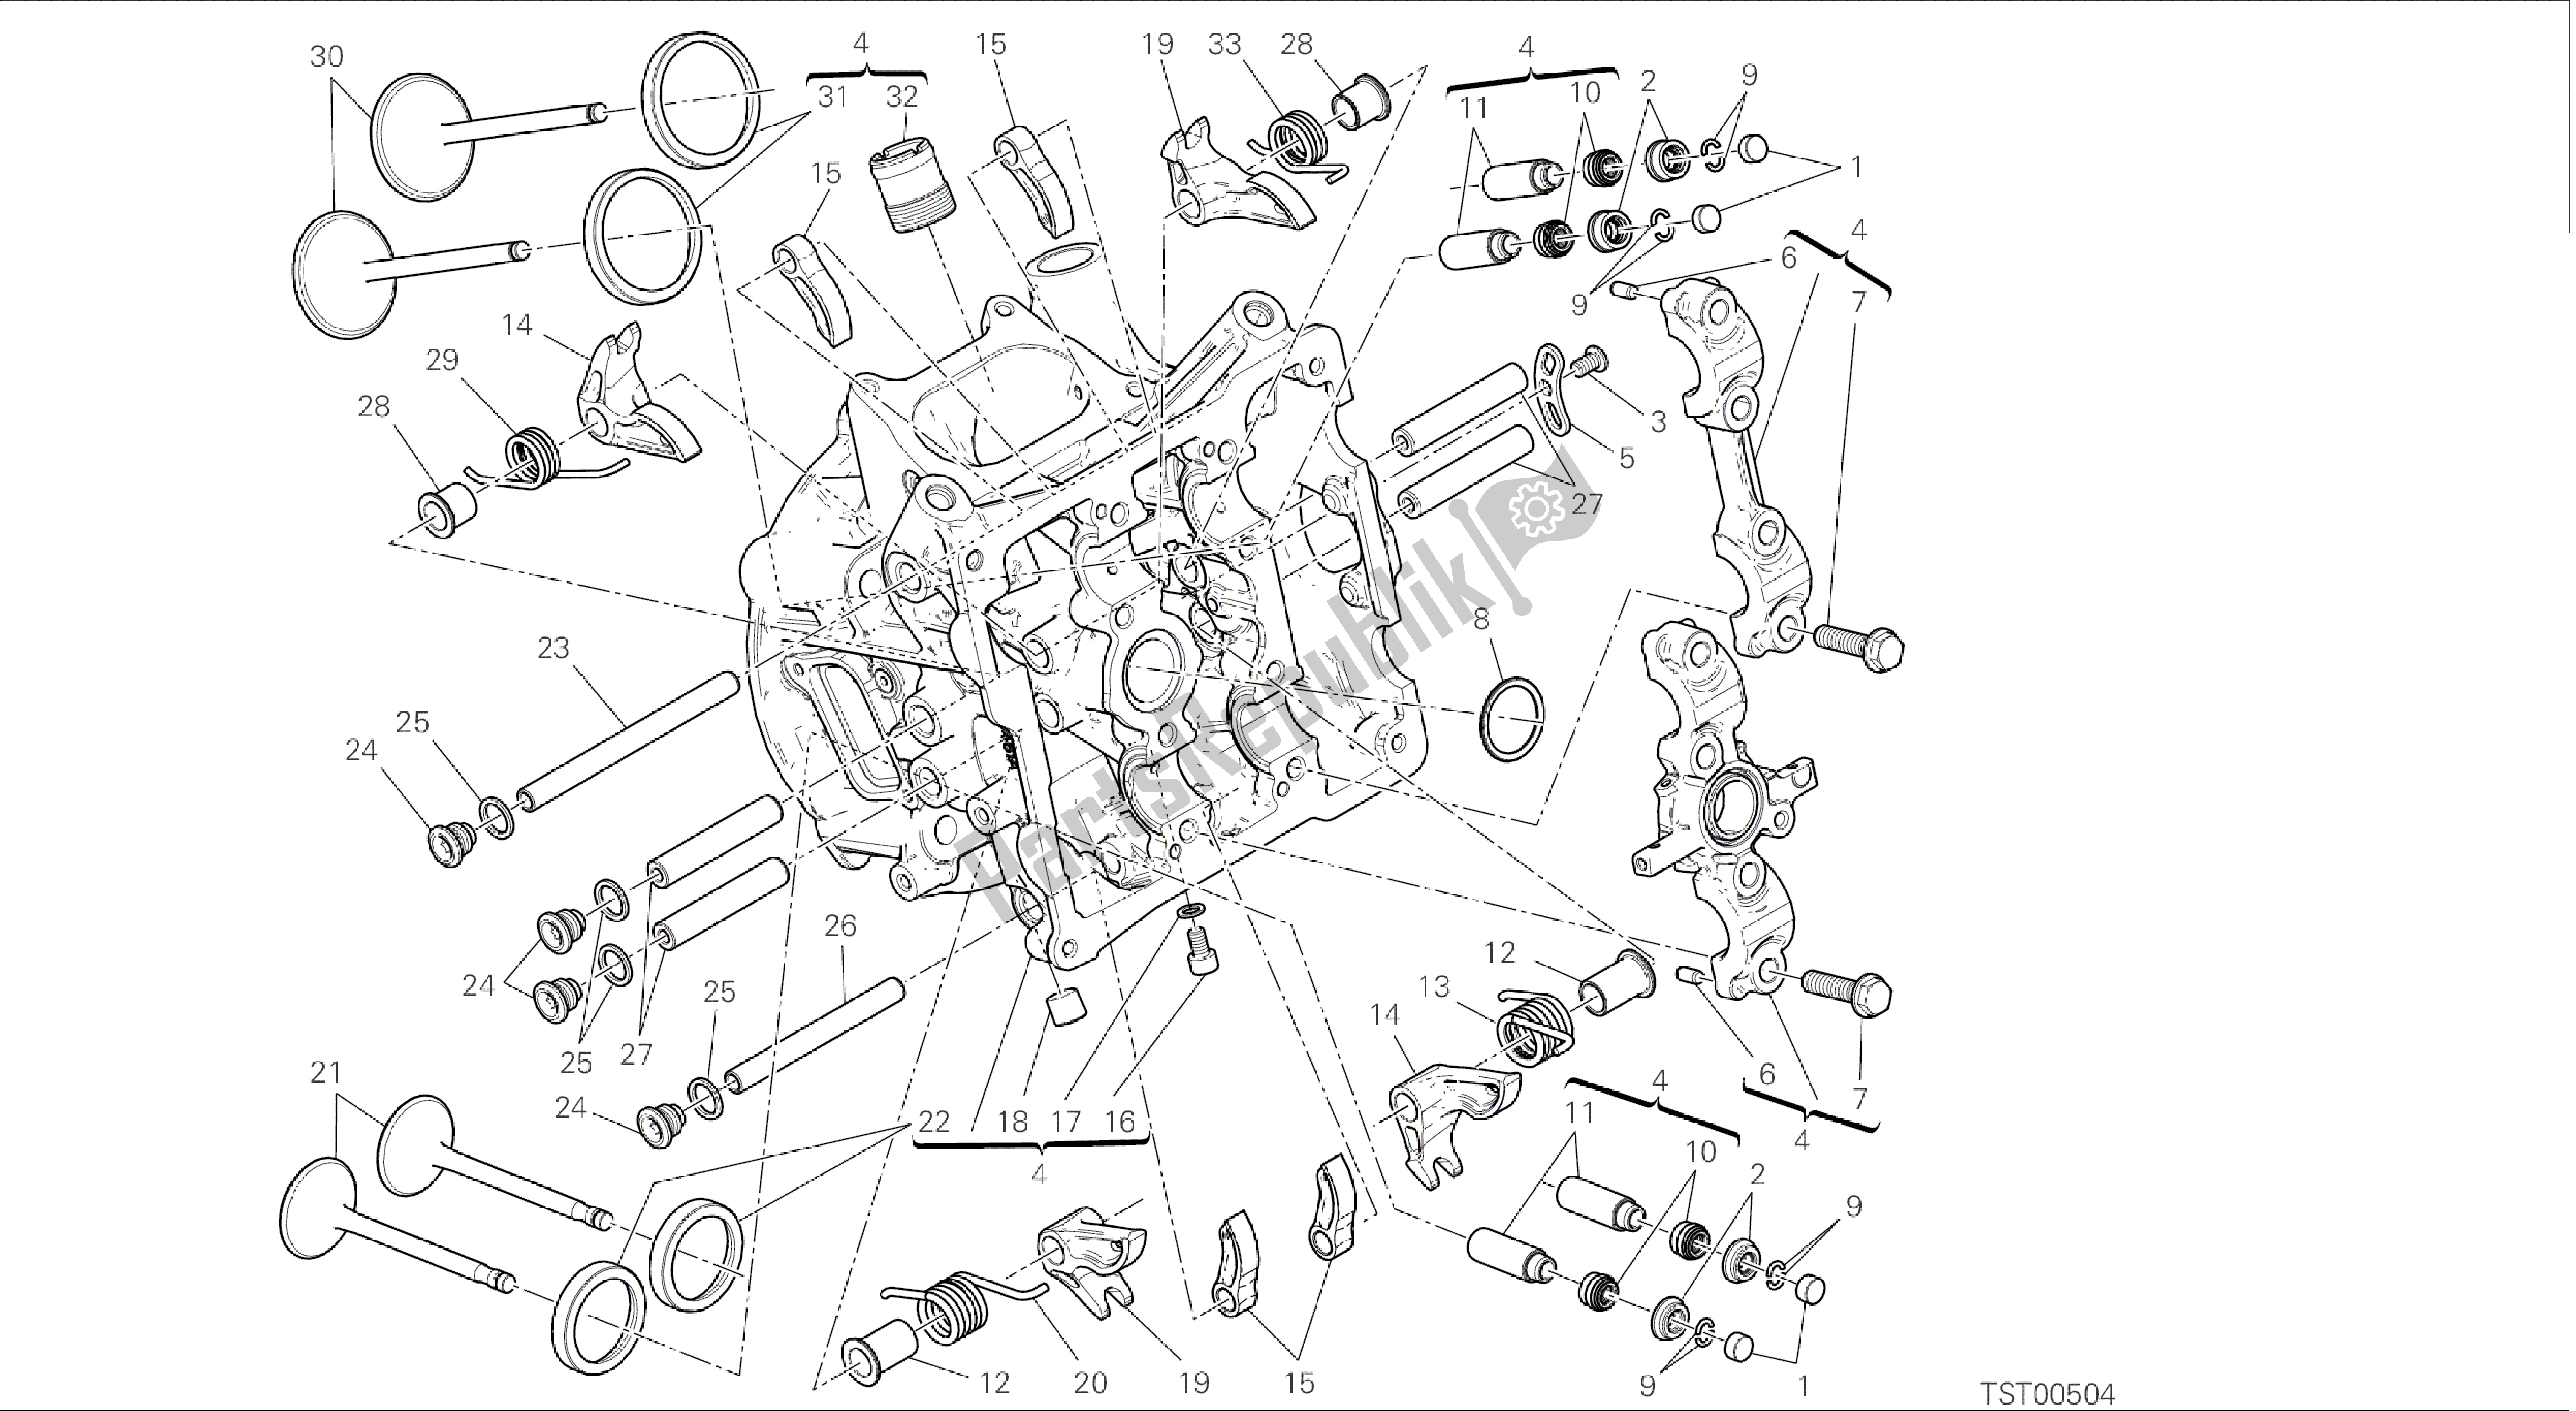 Alle onderdelen voor de Tekening 014 - Horizontale Kop [mod: 899 Abs; Xst: Aus, Eur, Fra, Jap, Twn] Groepsmotor van de Ducati Panigale 899 2014